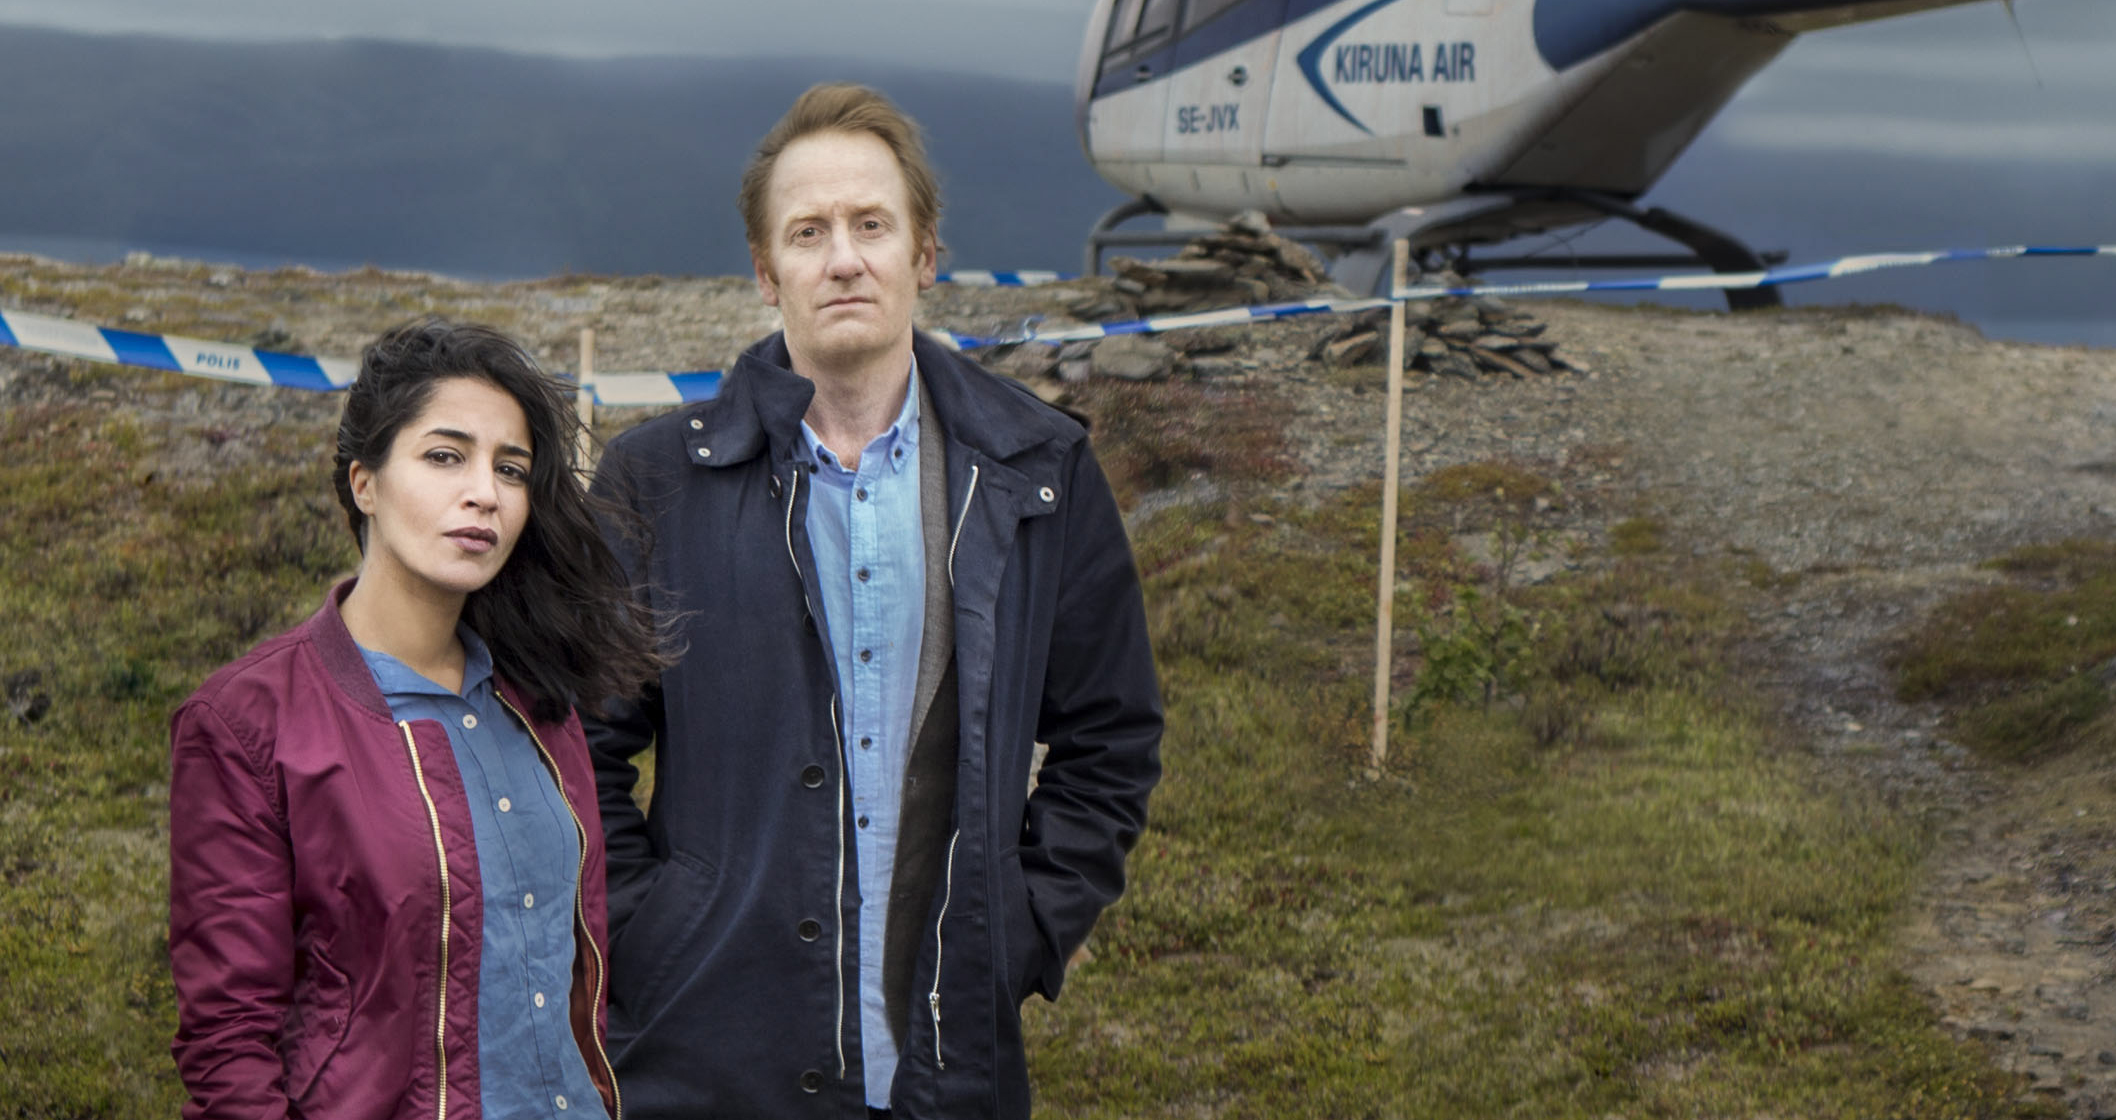 Swedish TV hit 'Midnight Sun' shines light on Sami people